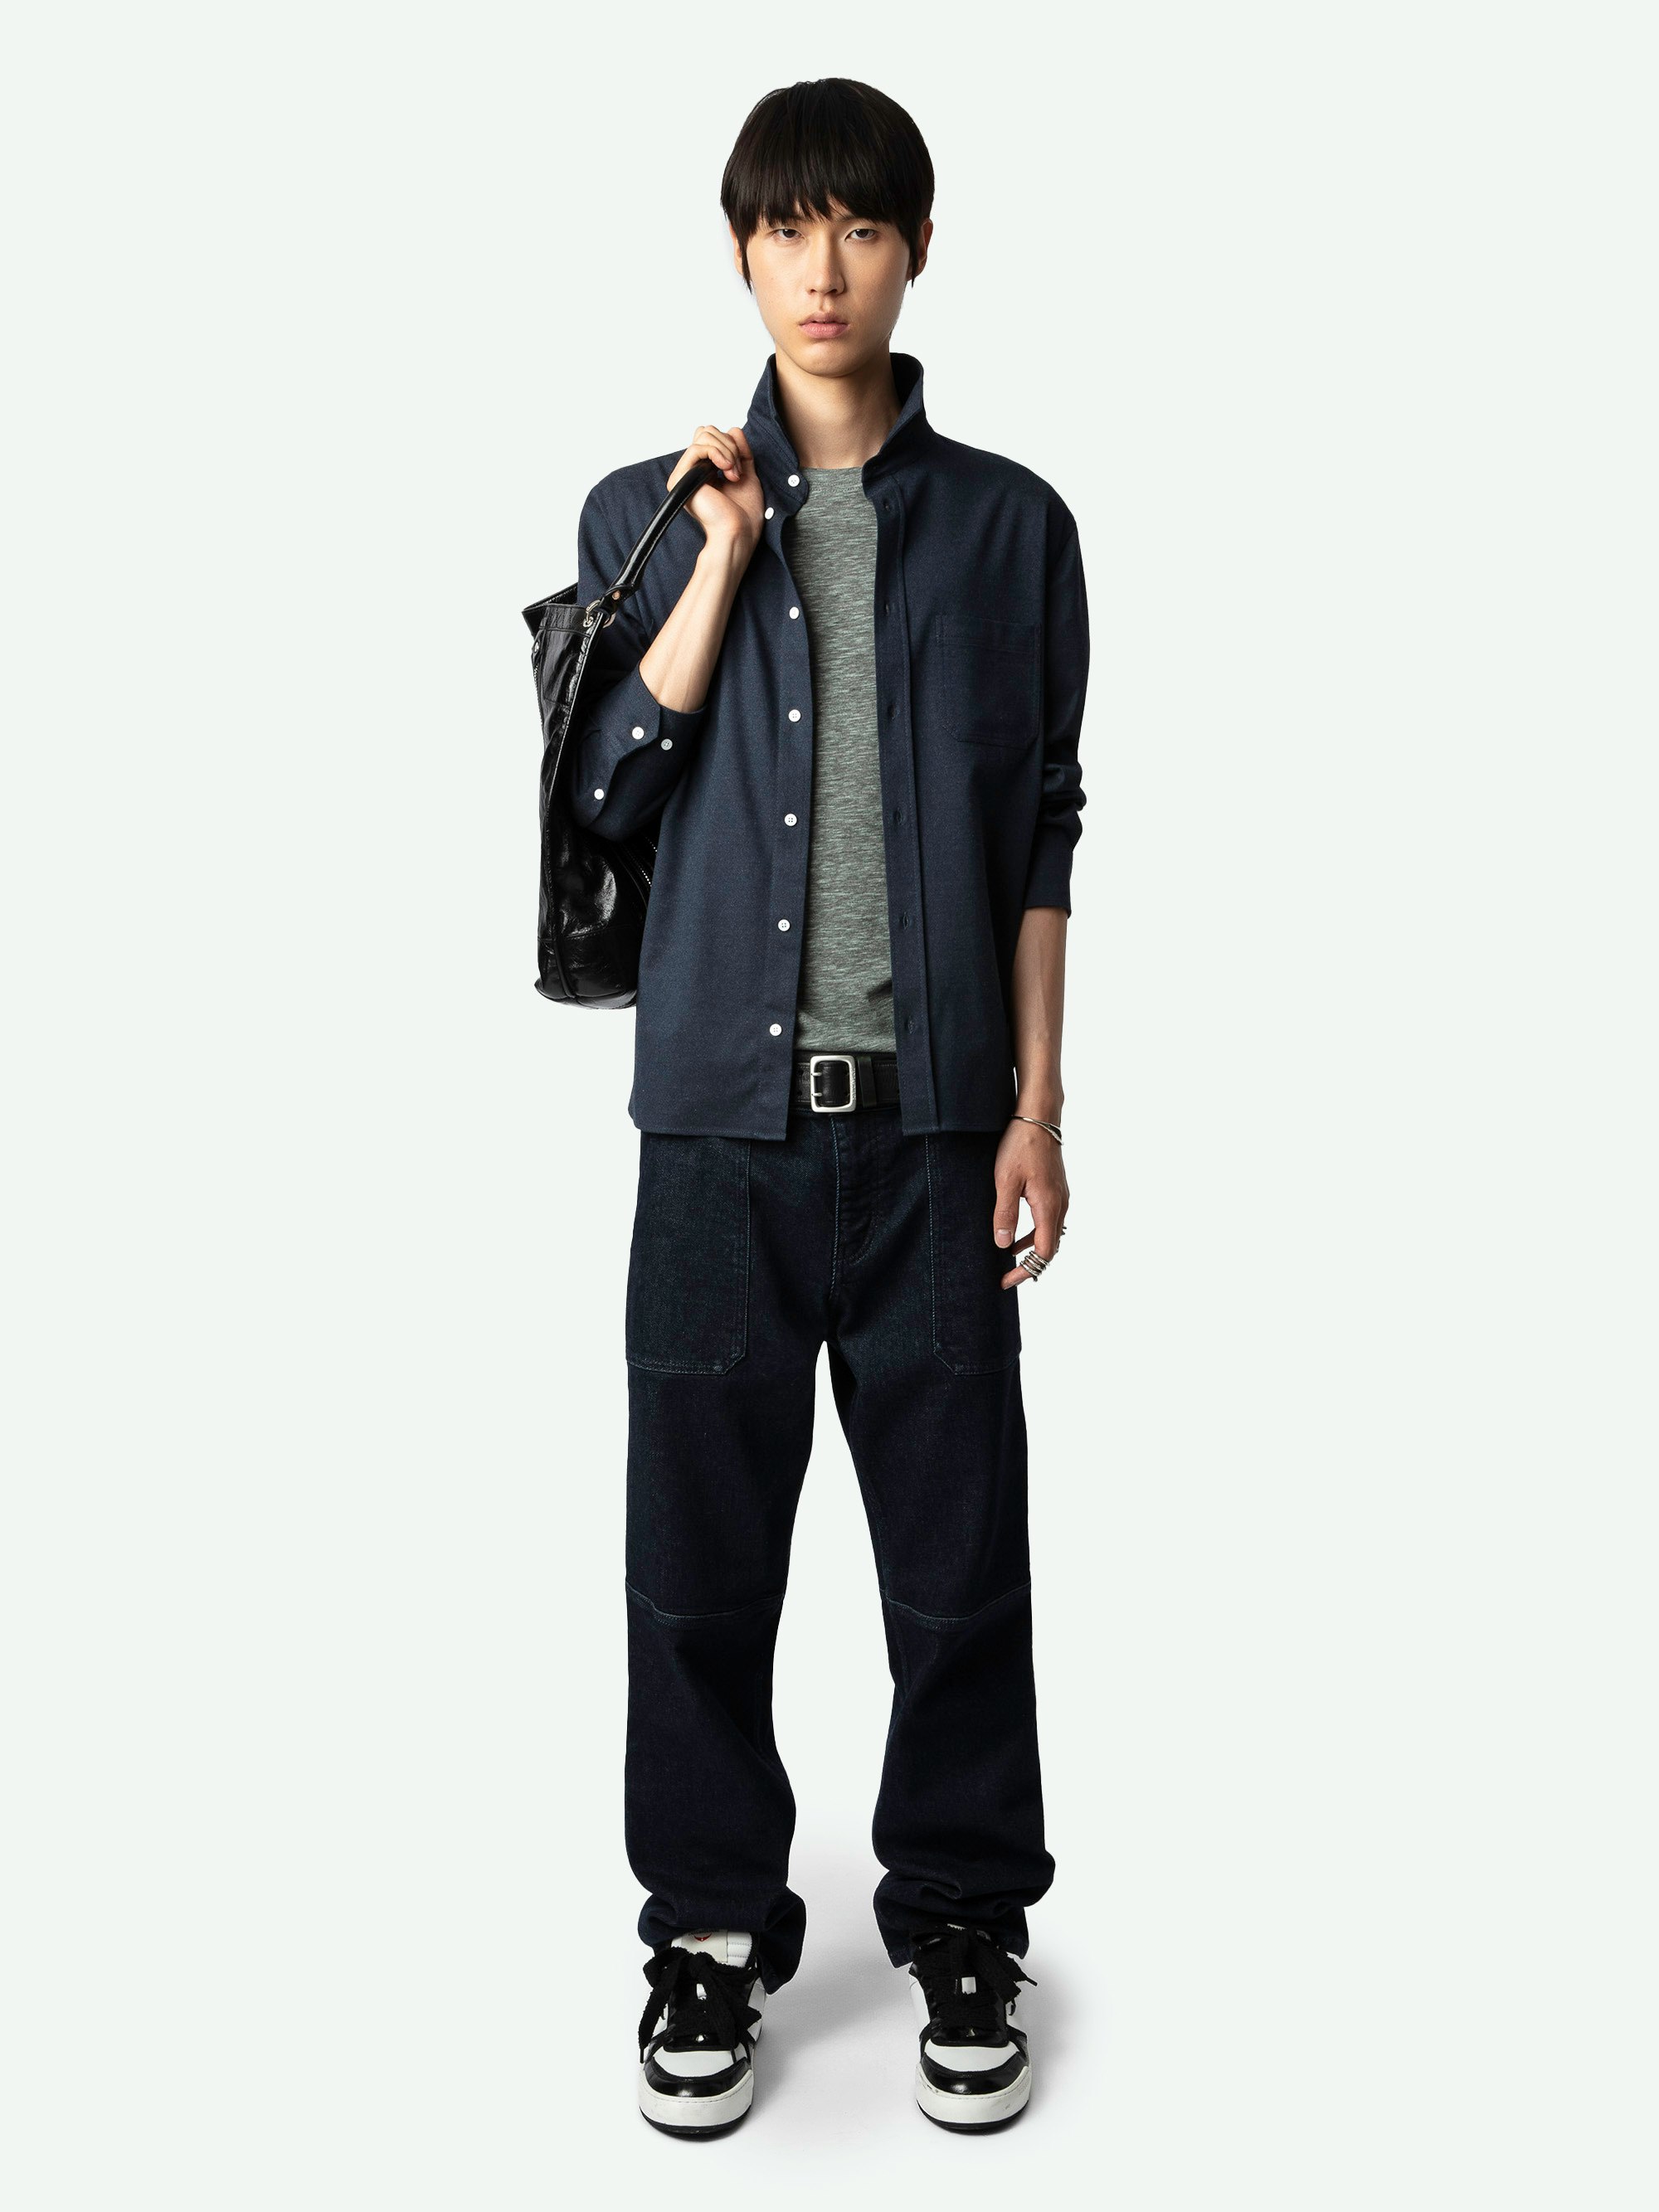 Camicia Stan - Camicia in flanella blu navy con maniche lunghe e tasca applicata.